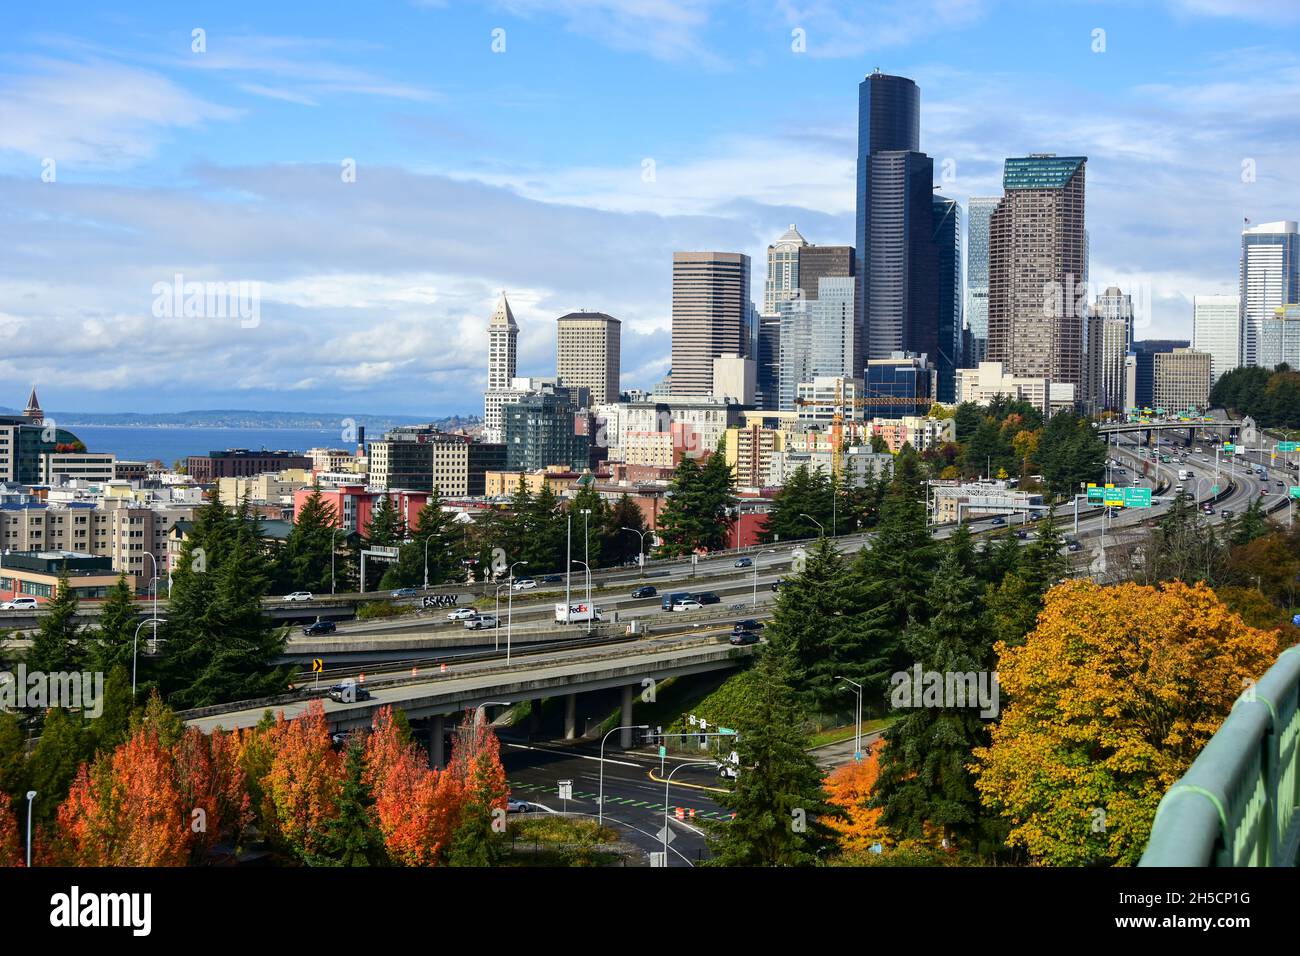 View of Seattle, Washington Stock Photo